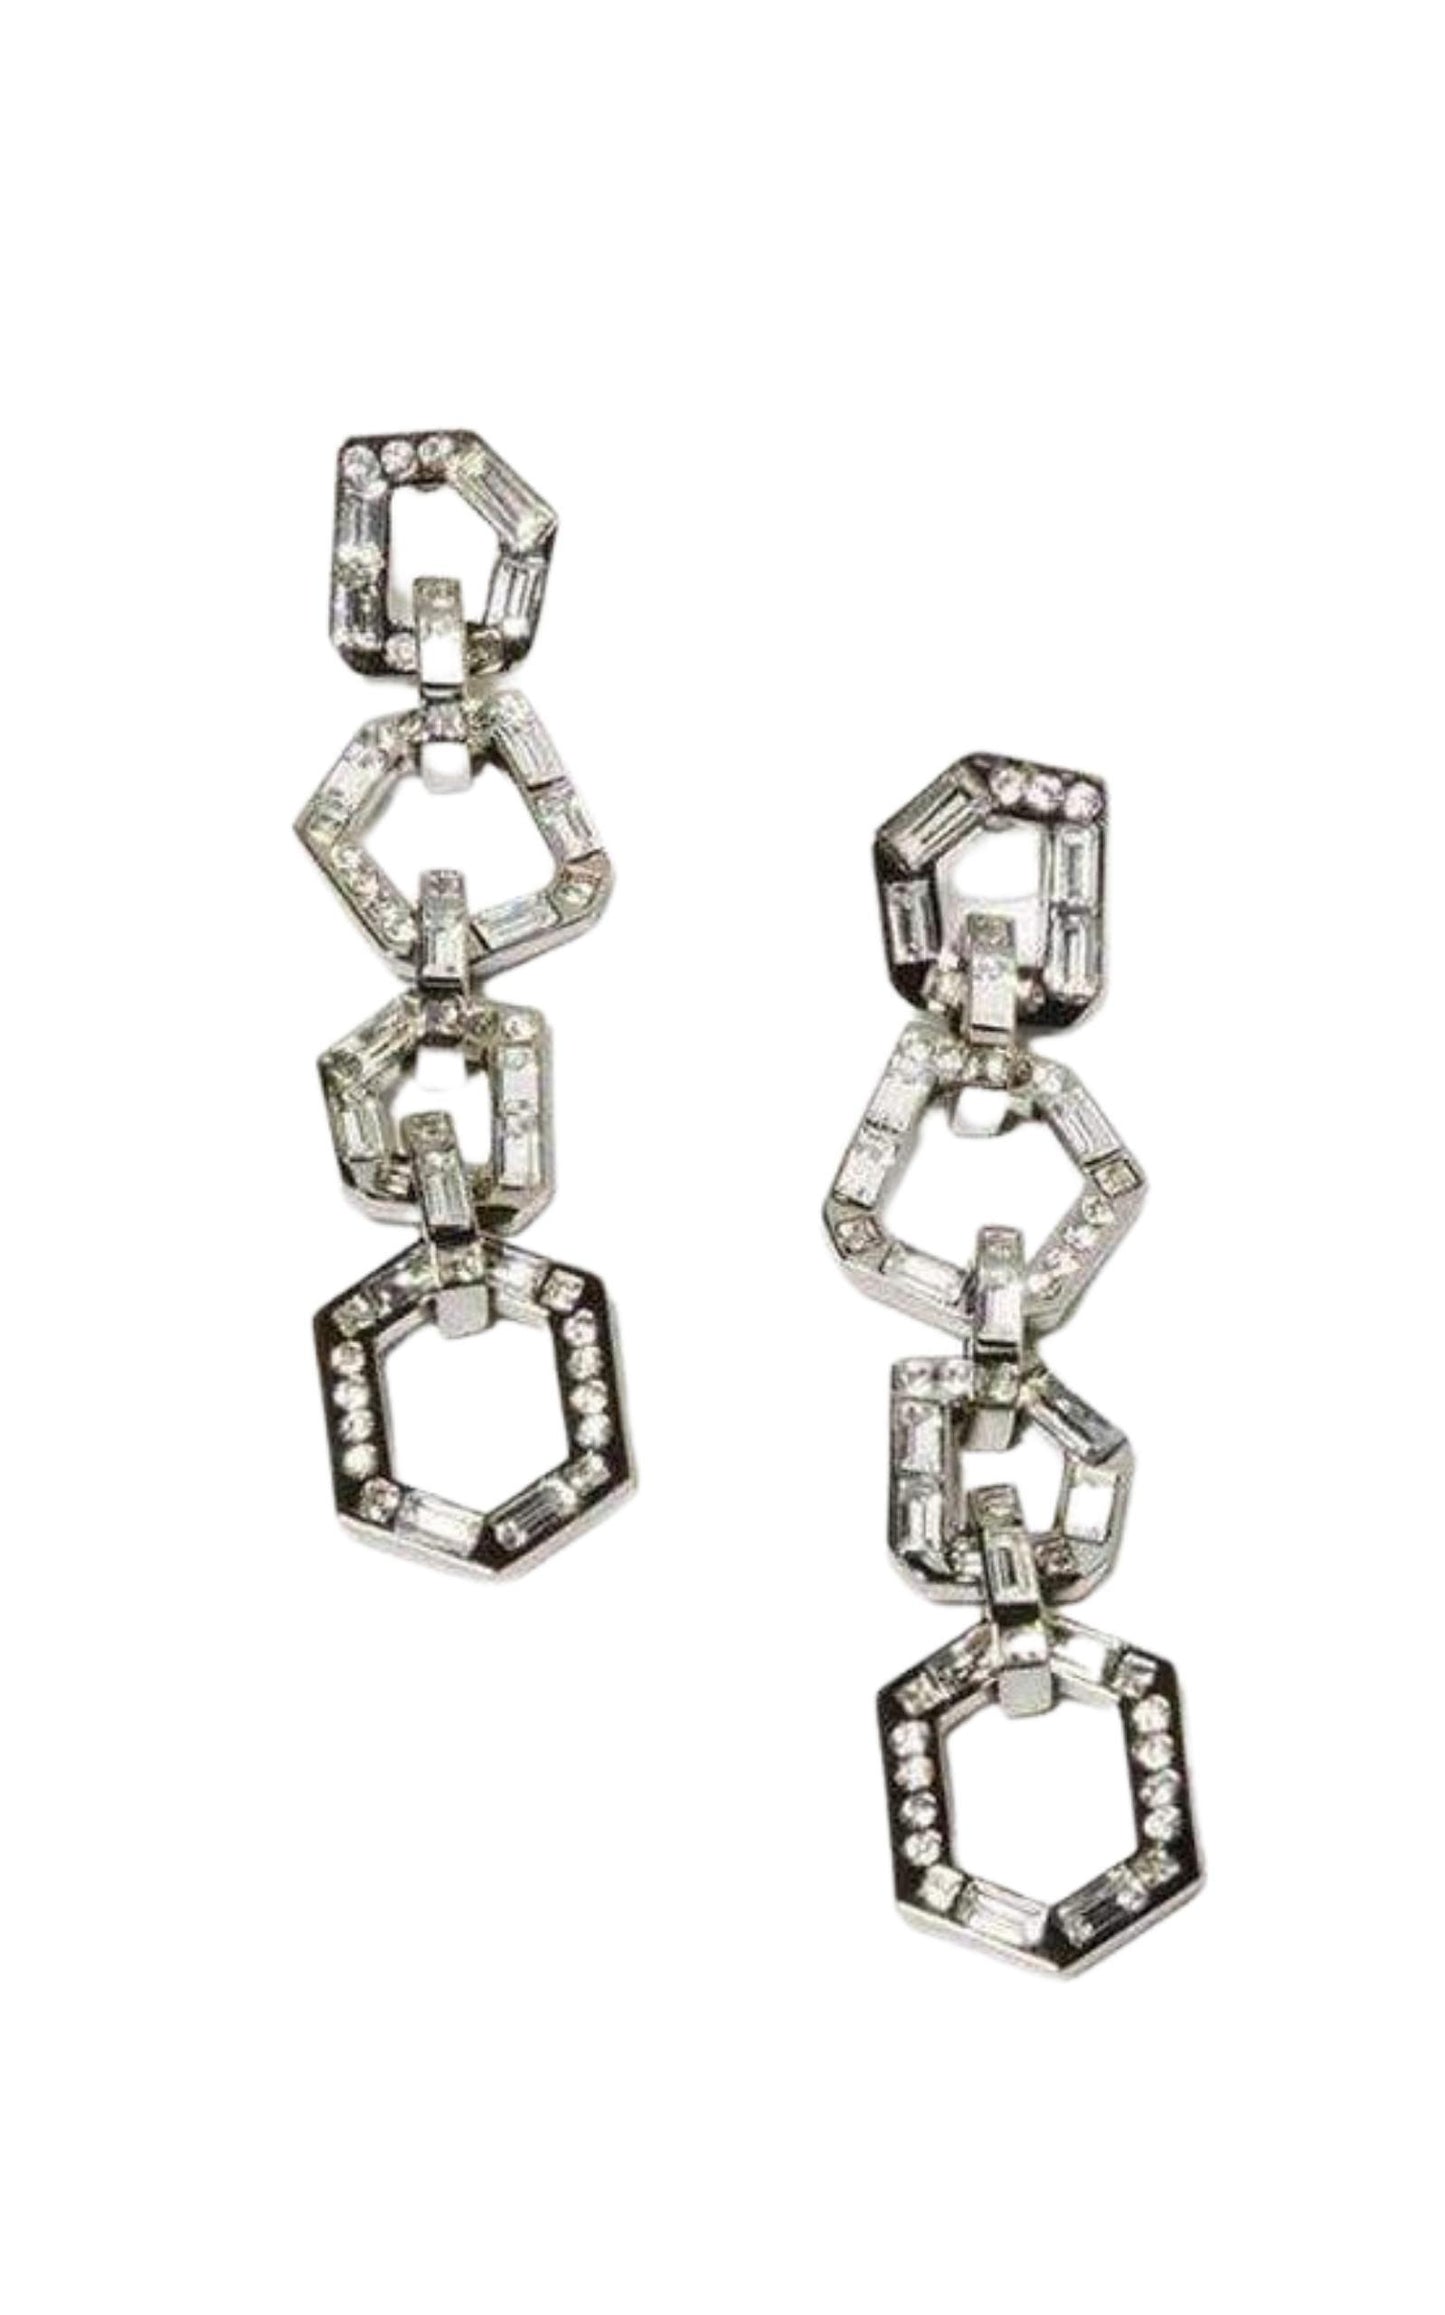 Stone Link Chain Earrings